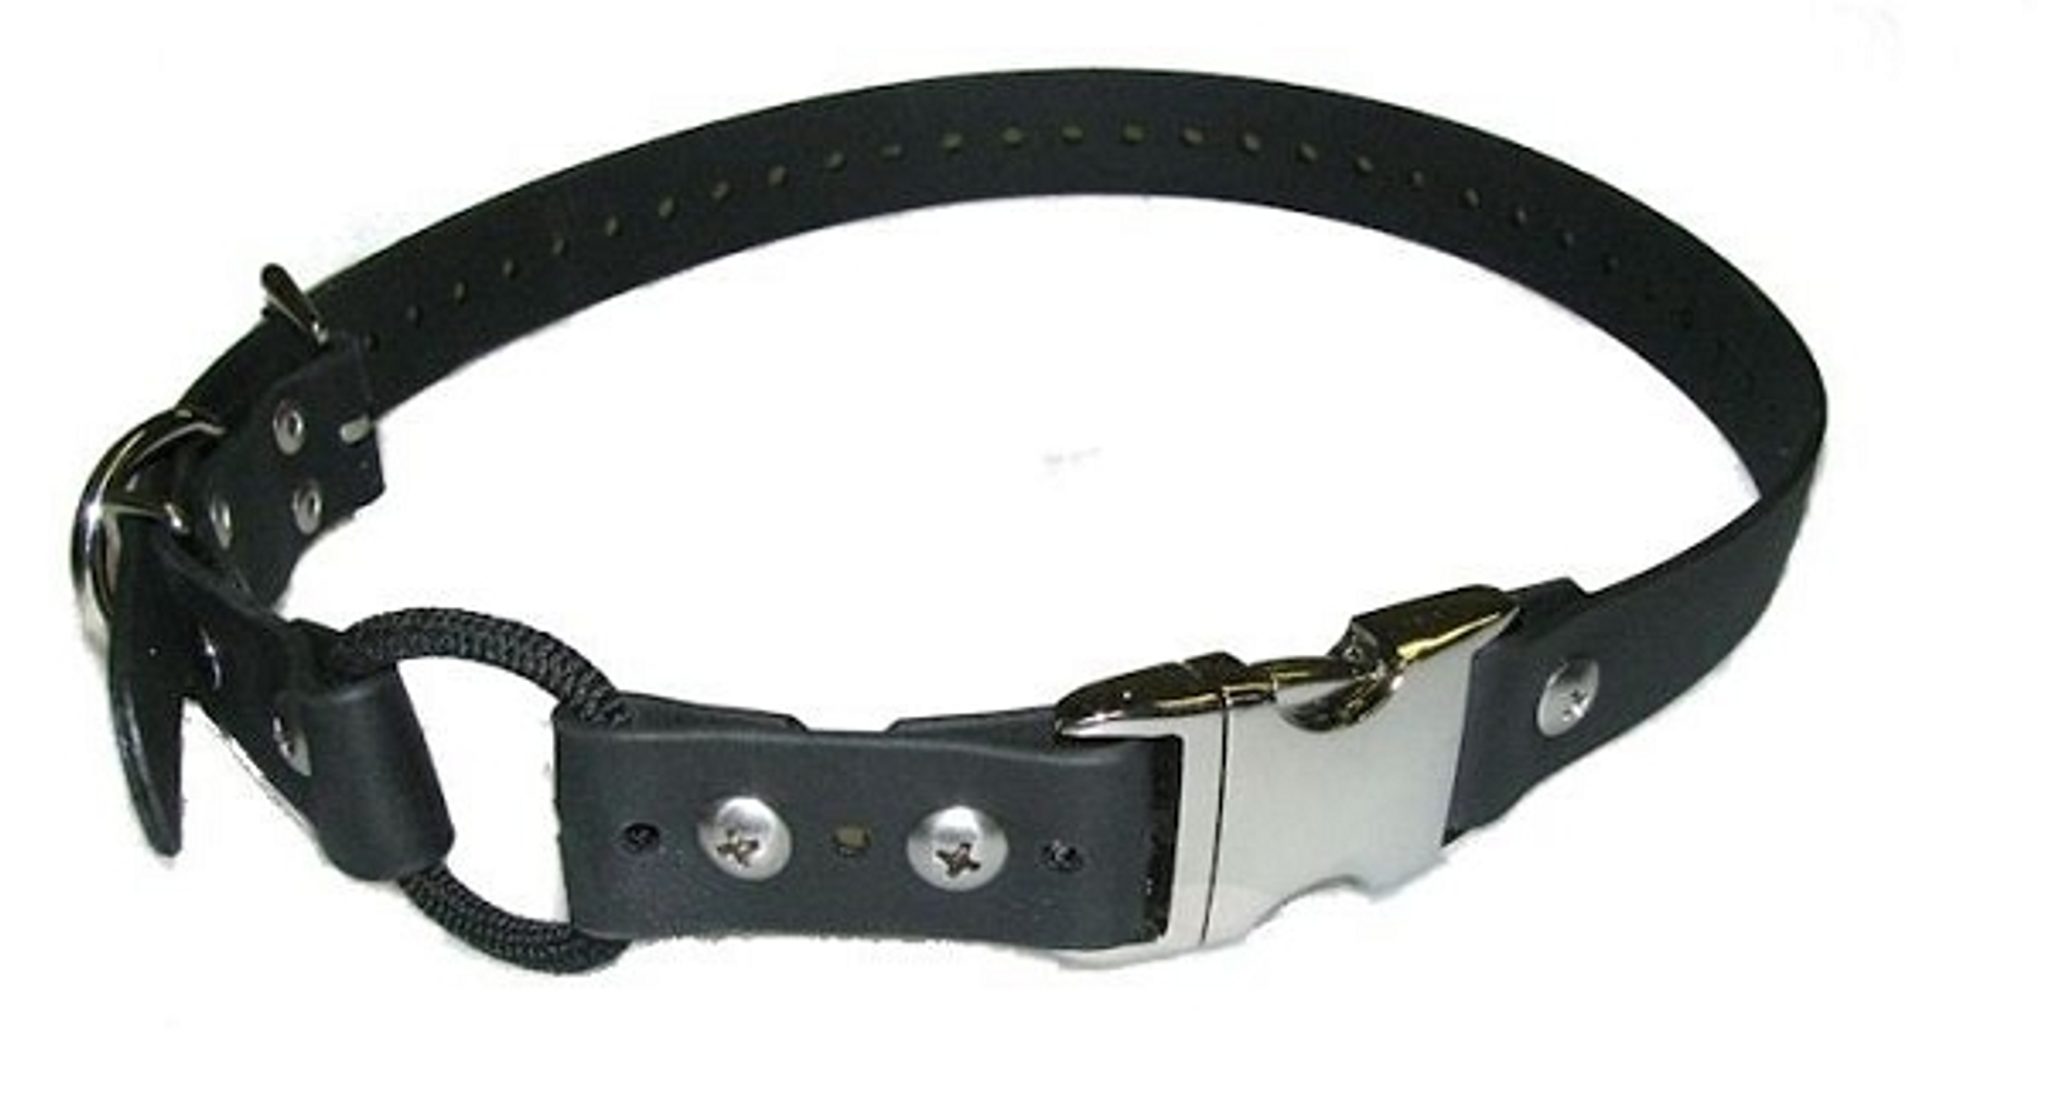 E-collar Bungee obojek z Biothanu s rychloupínáním - 2,5 cm černá